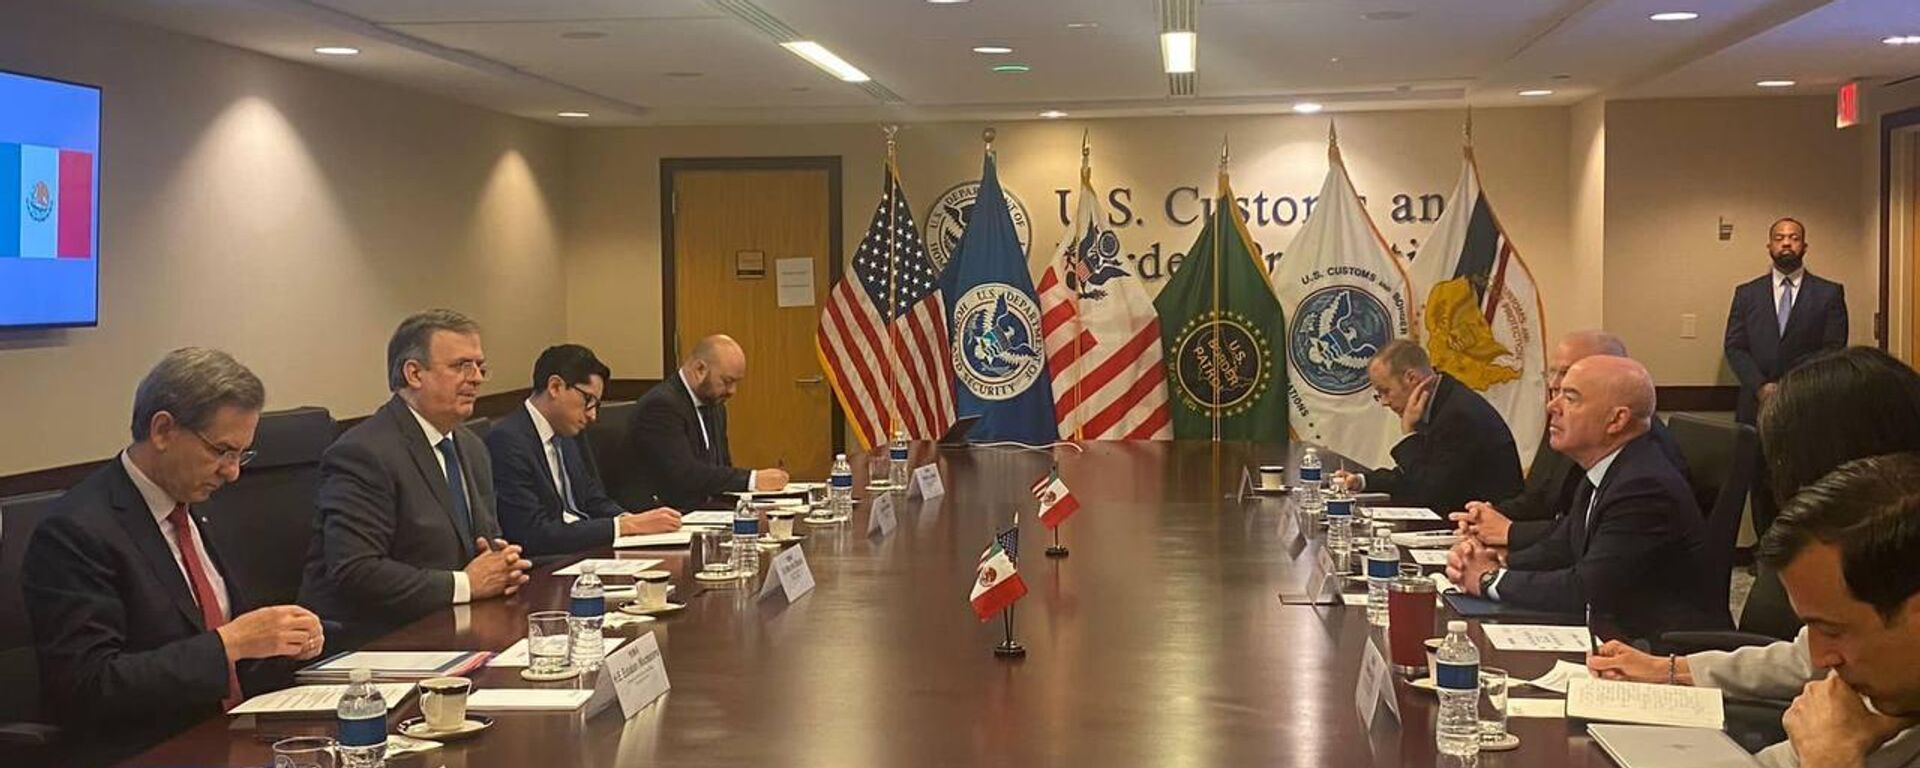 Reunión bilateral entre México y Estados Unidos rumbo a la Cumbre de las Américas. - Sputnik Mundo, 1920, 18.05.2022